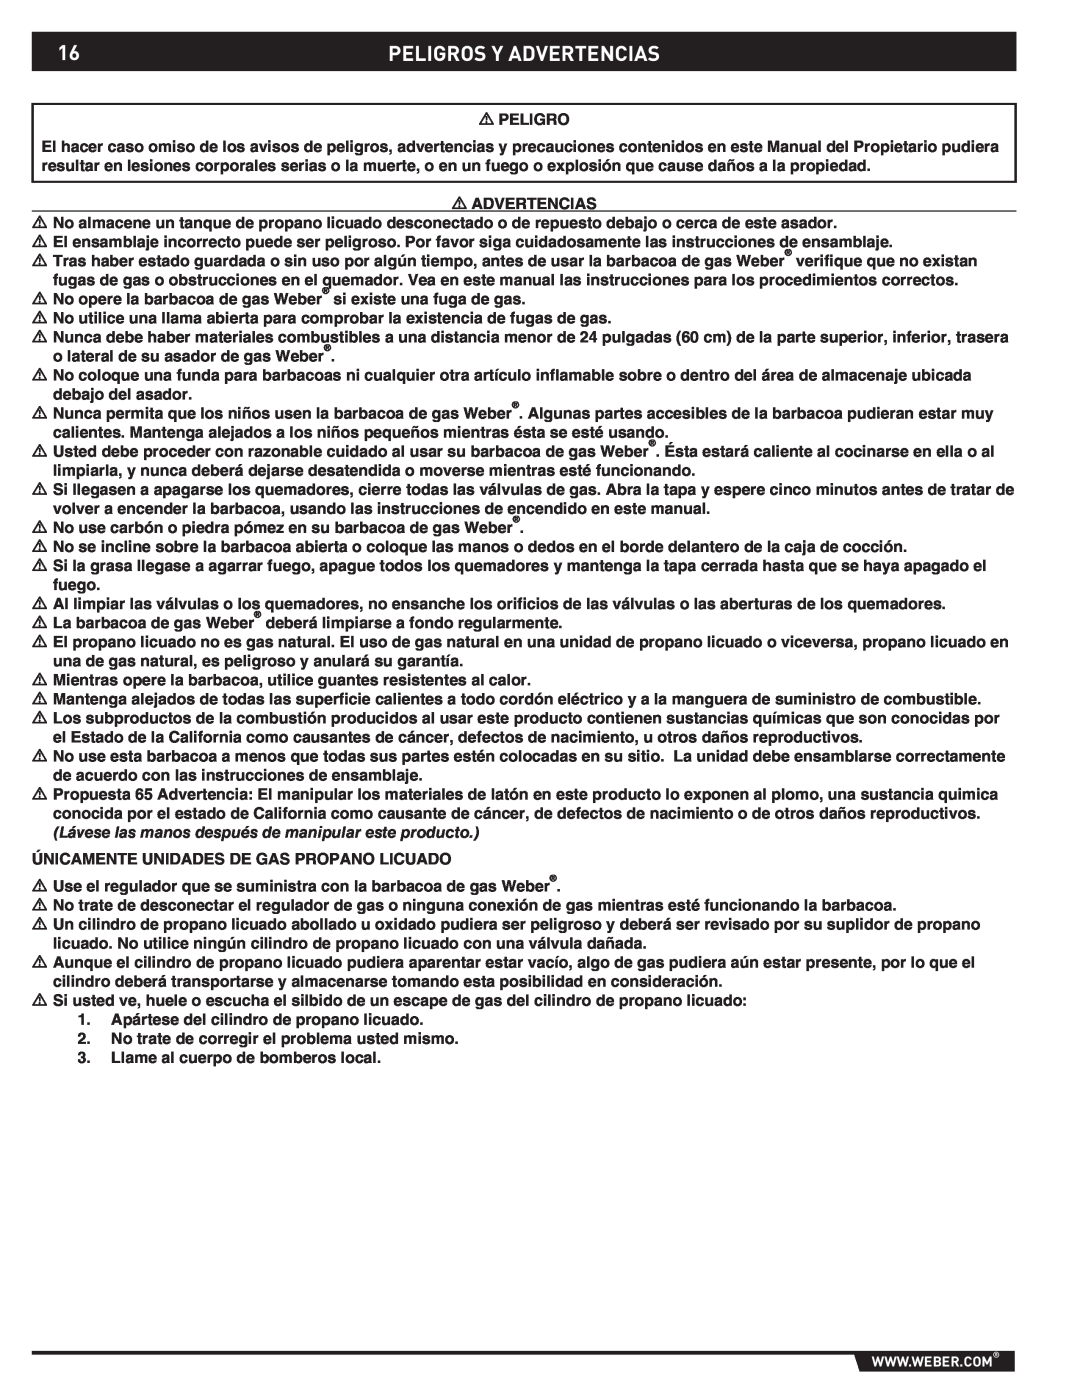 Weber 89796 manual Peligros Y Advertencias 